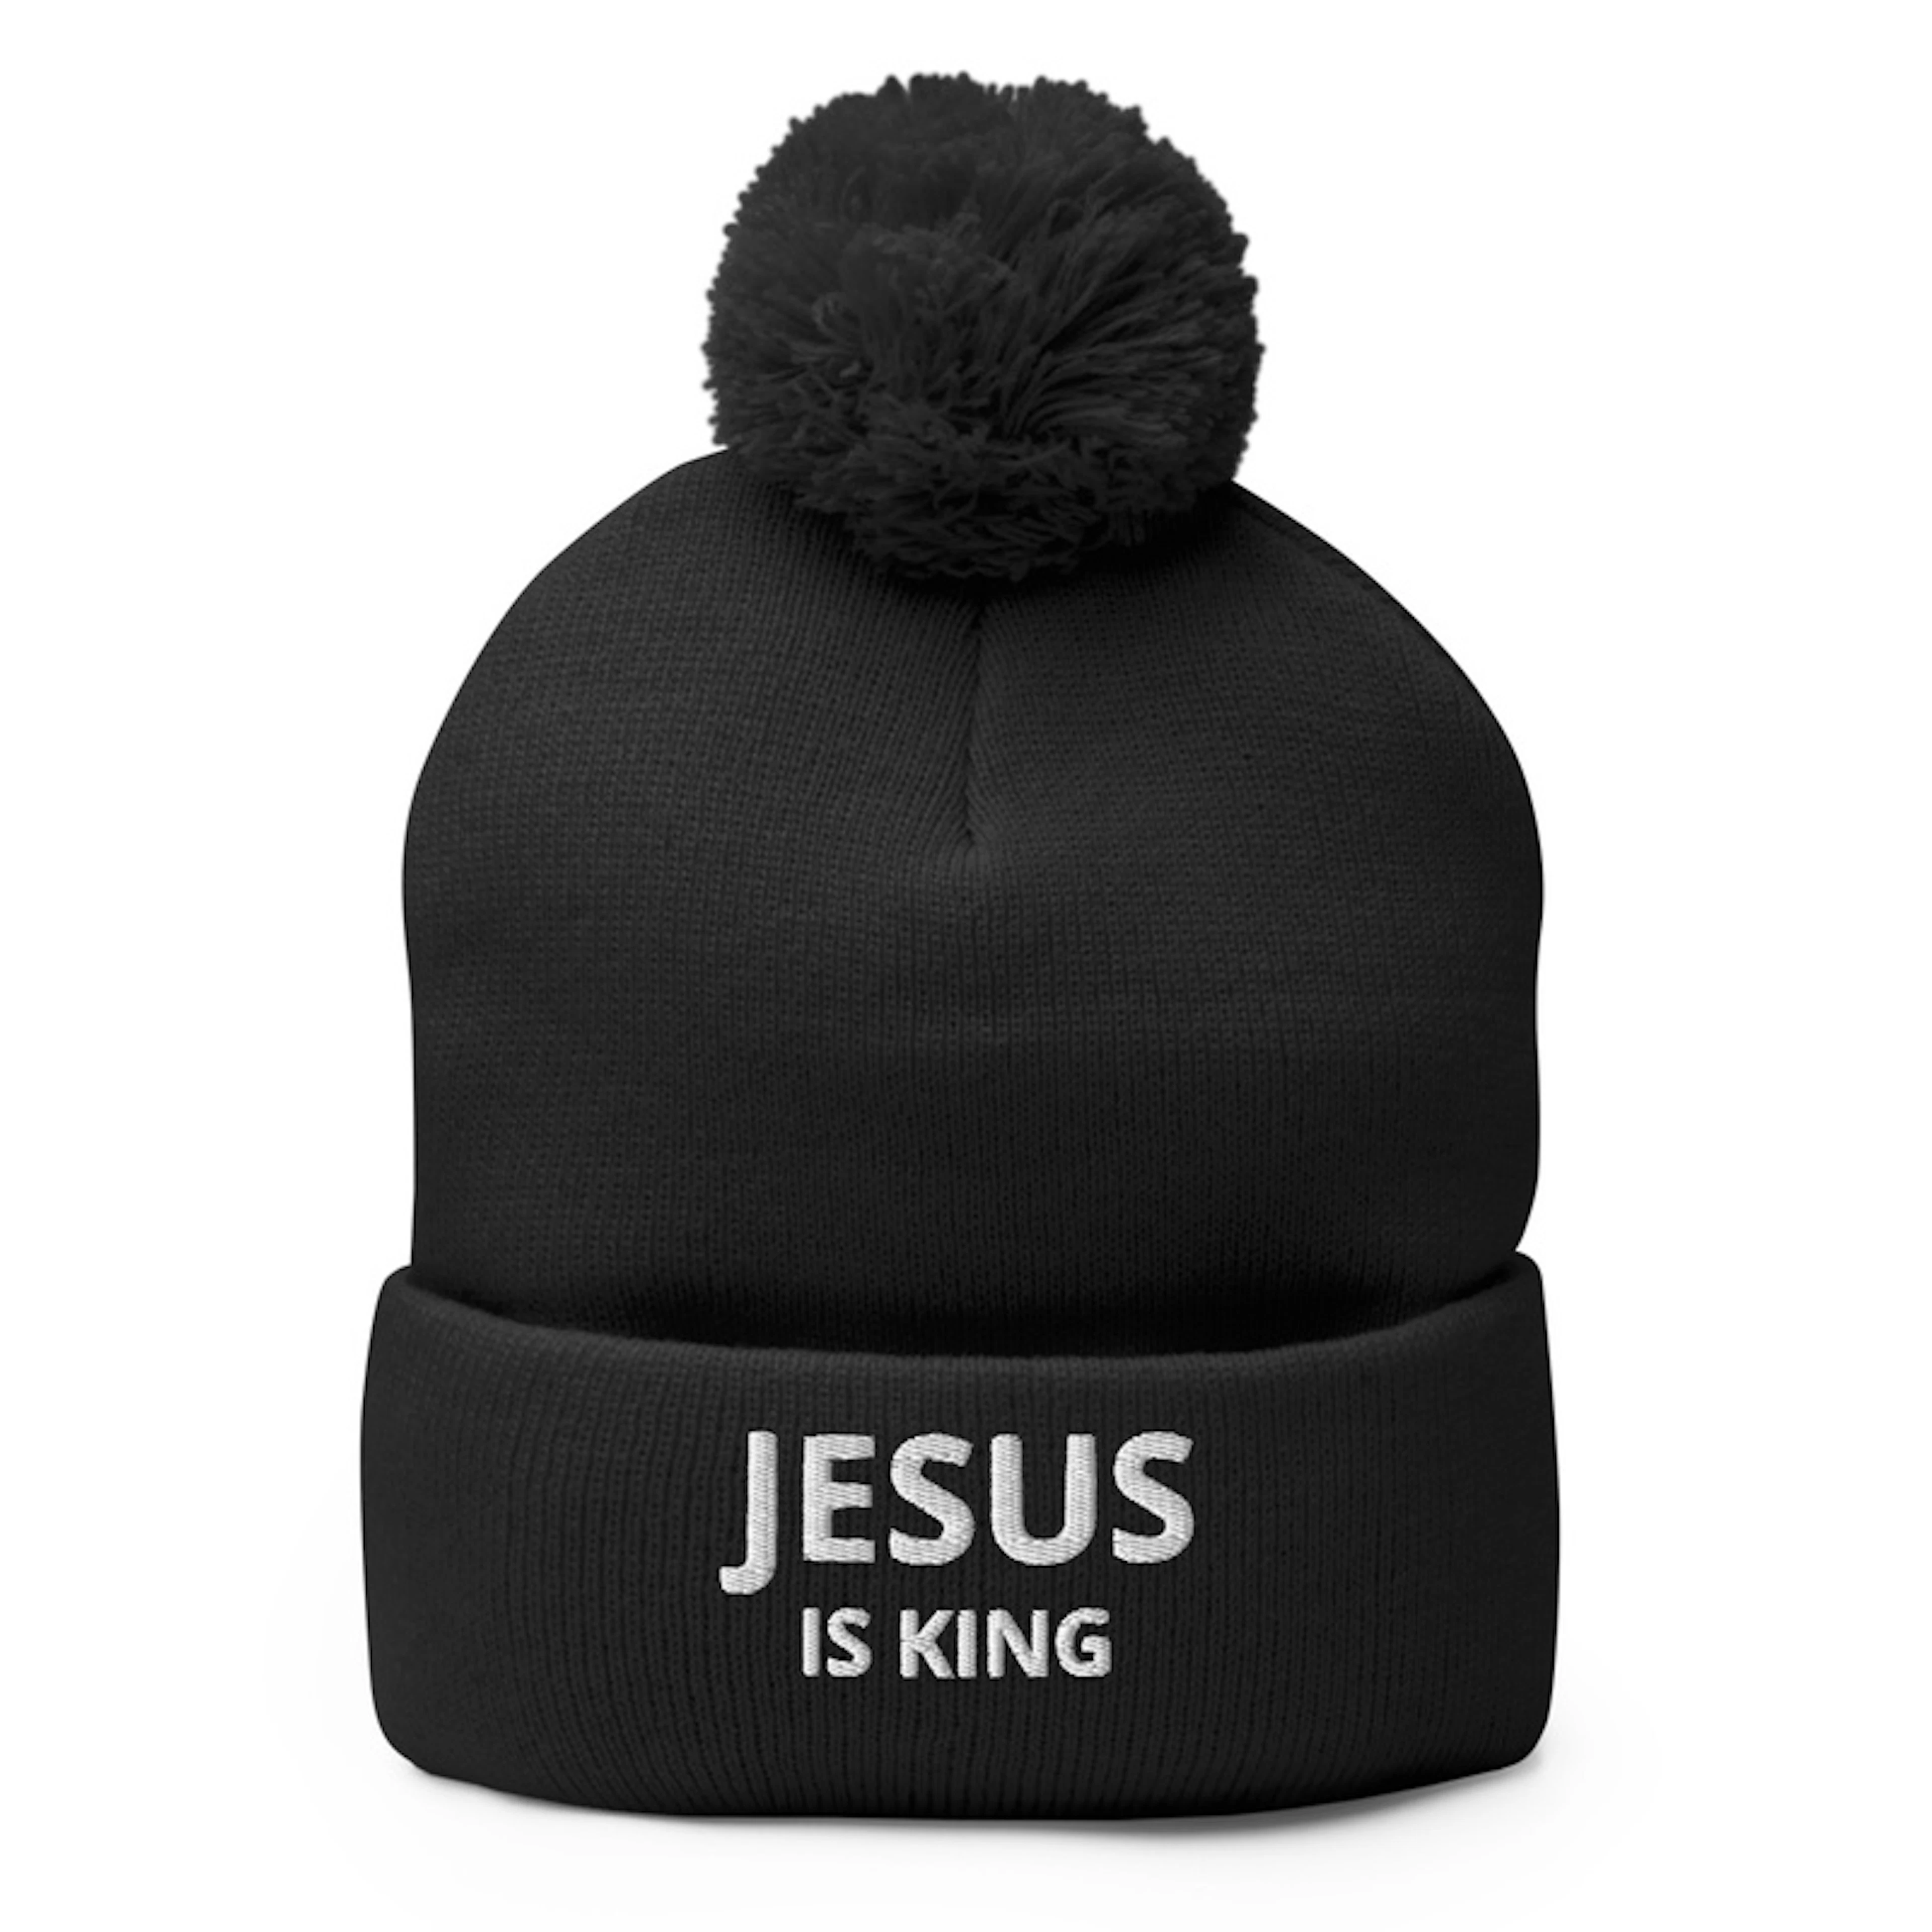 JESUS IS KING